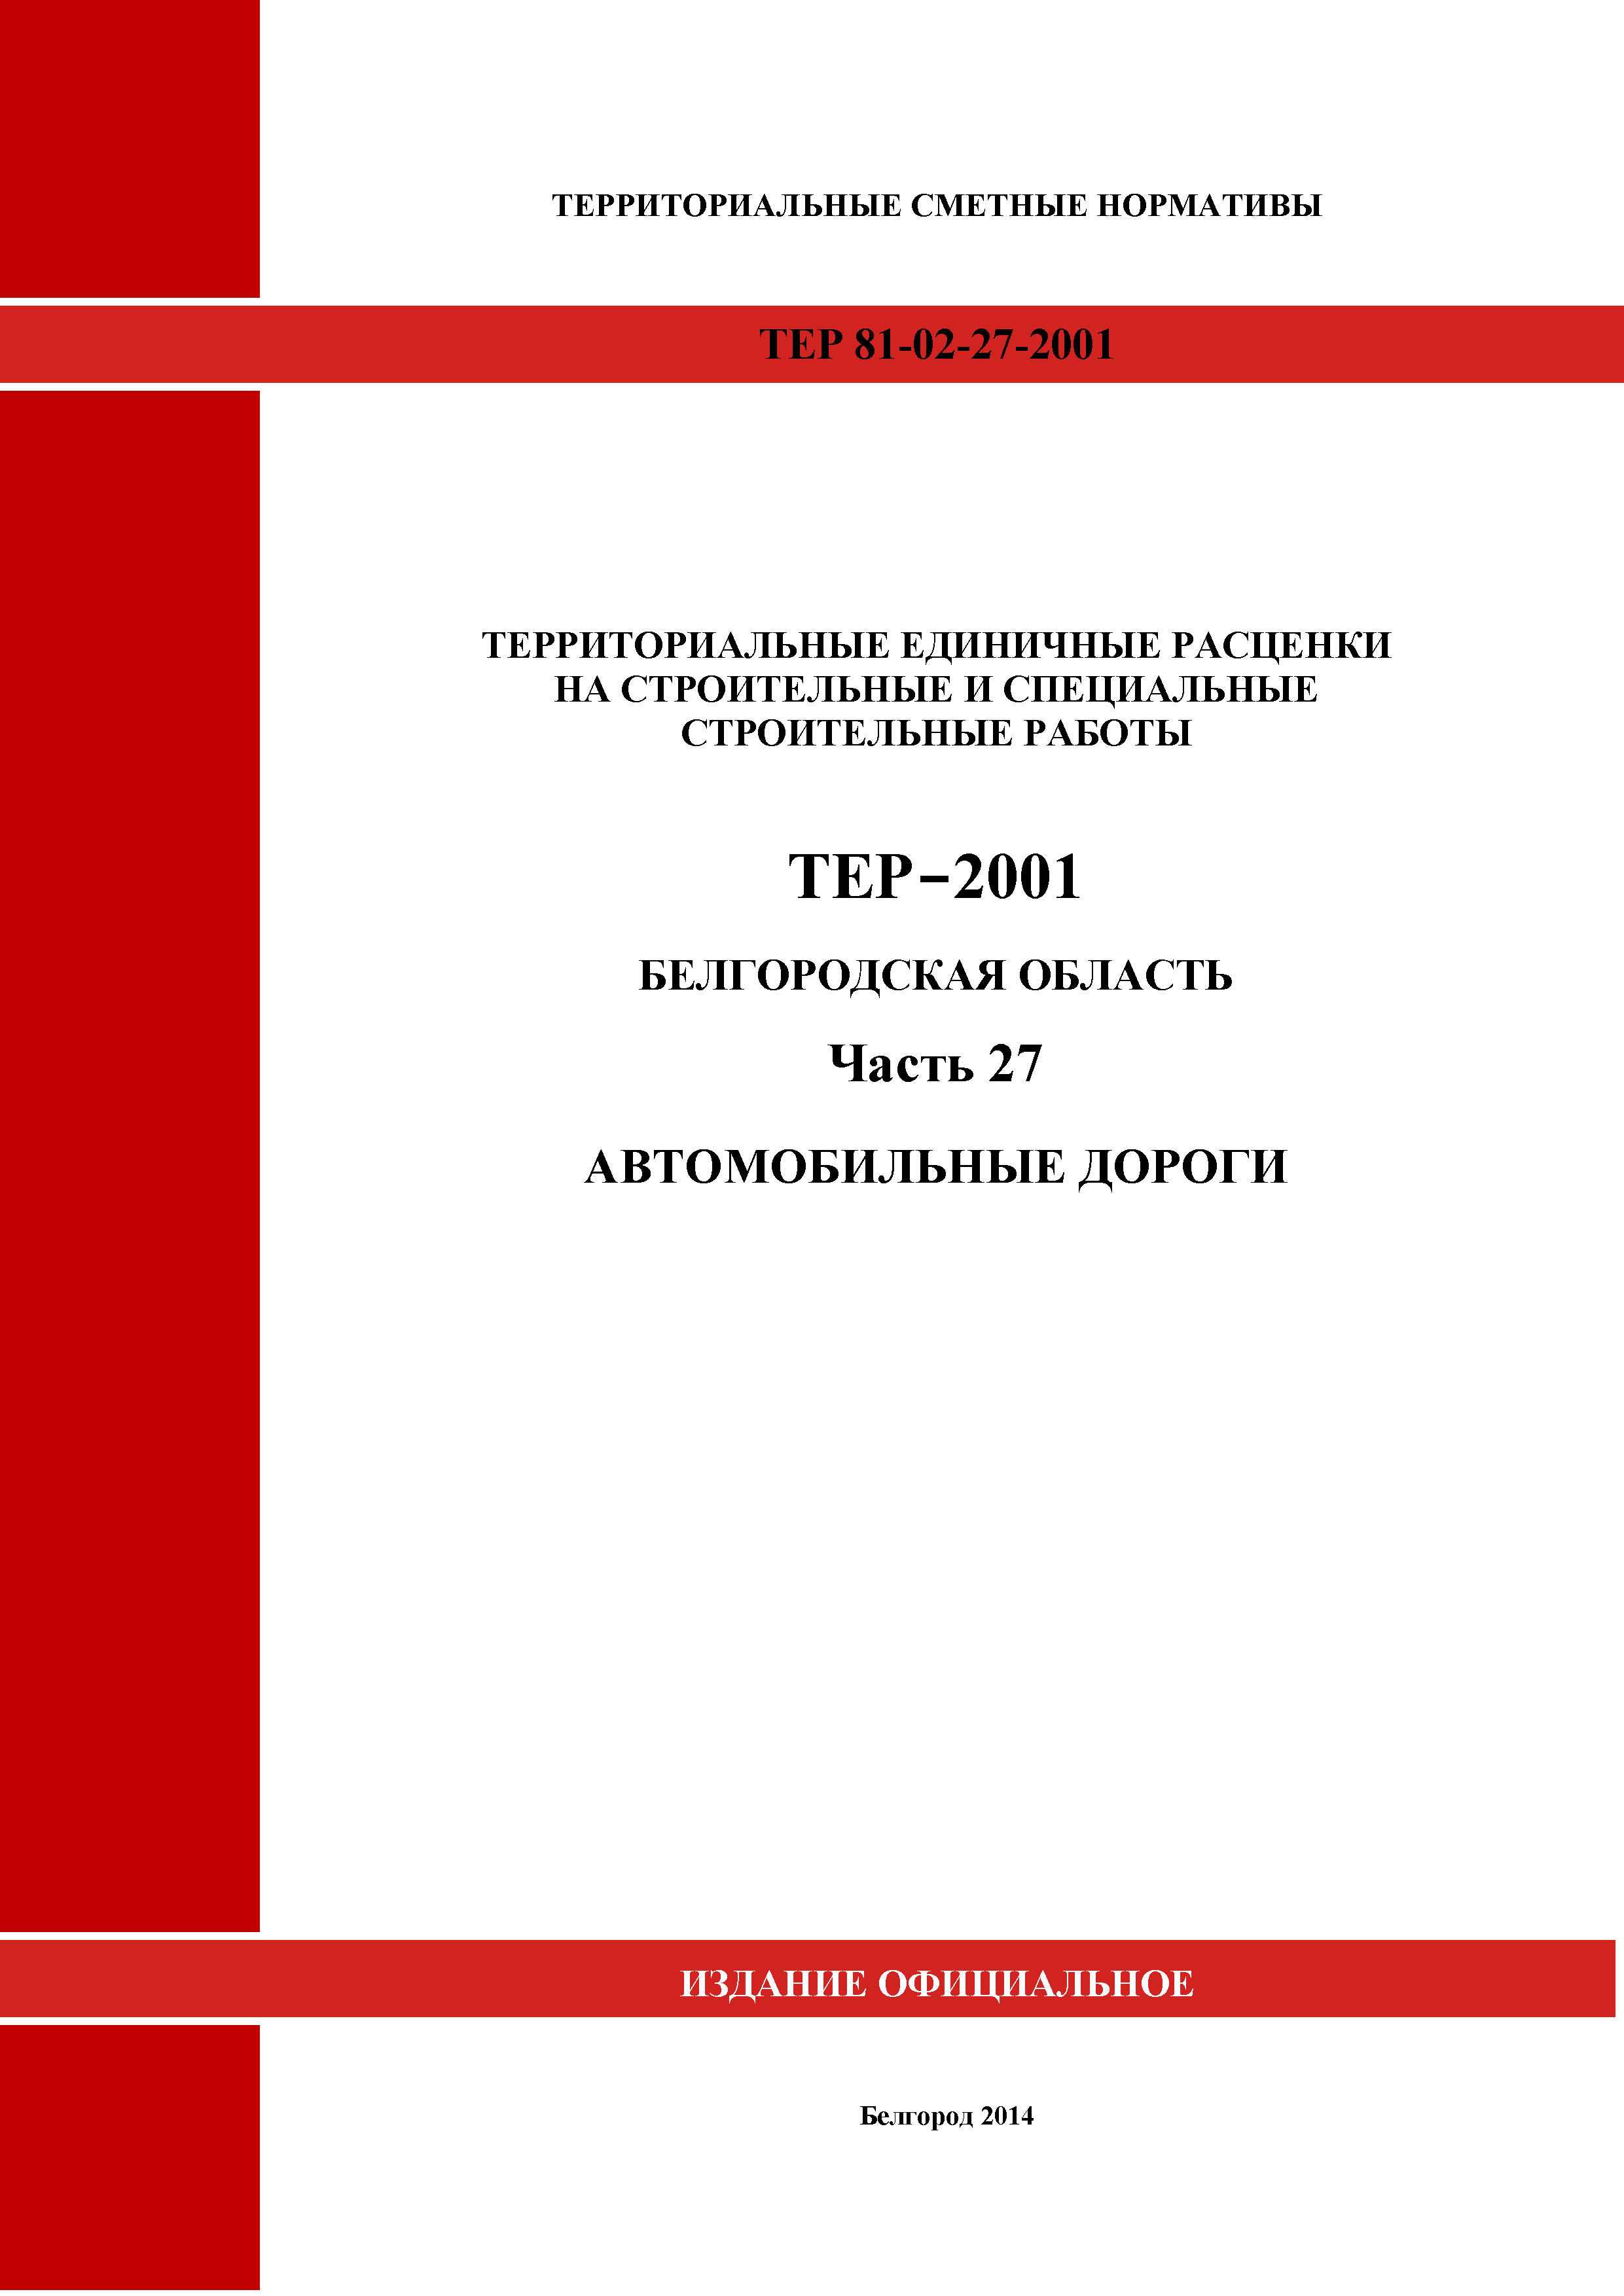 ТЕР Белгородская область 81-02-27-2001